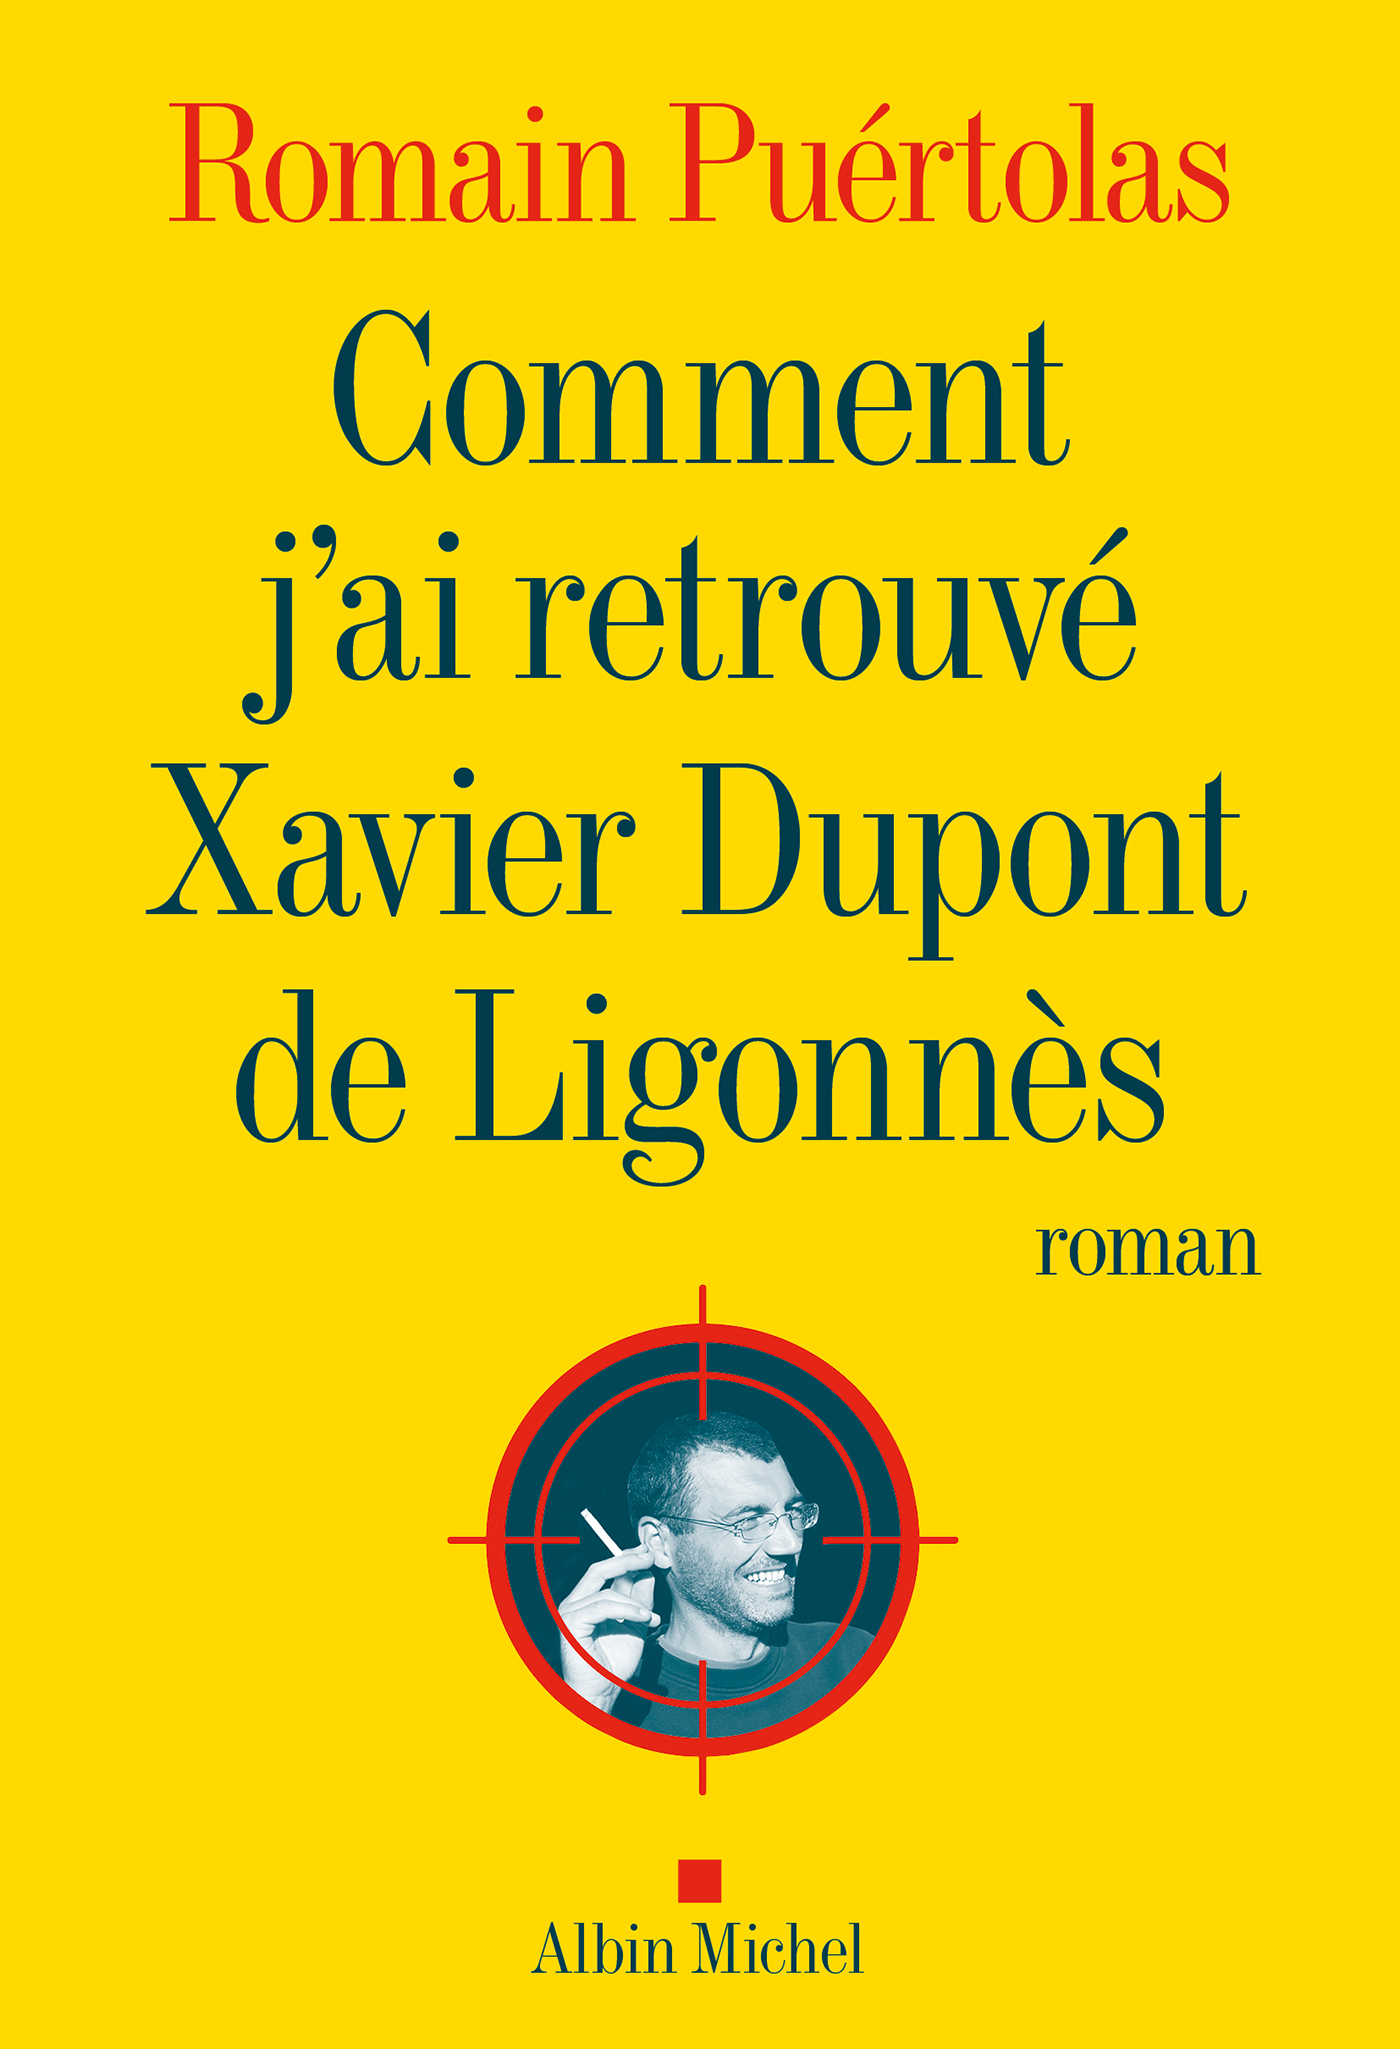 Couverture du livre Comment j'ai retrouvé Xavier Dupont de Ligonnès